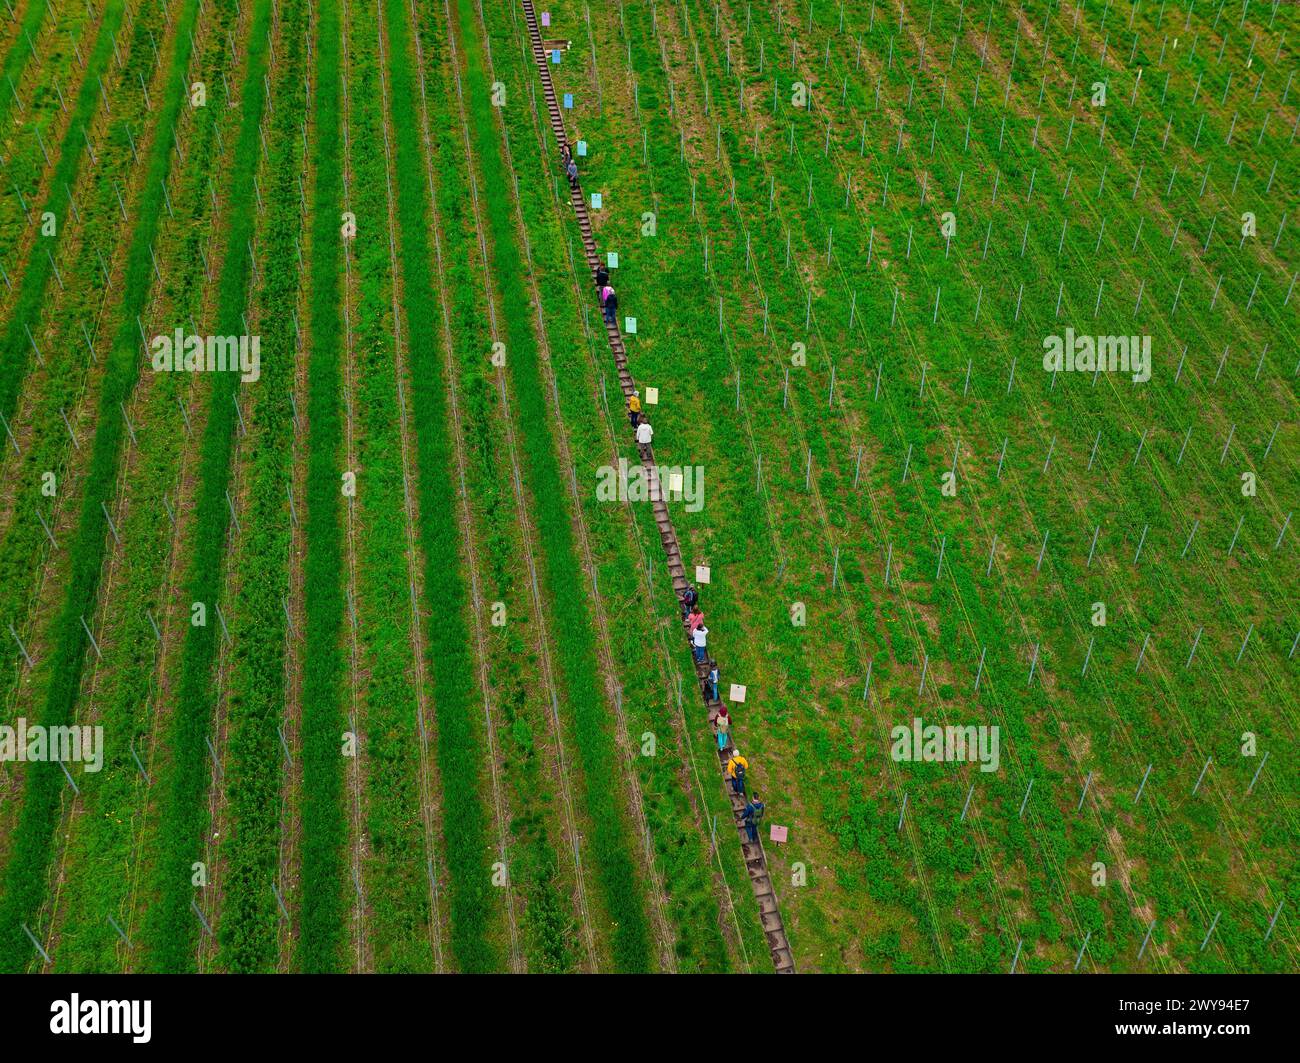 Vue aérienne d'une longue file de personnes s'étendant à travers les rangées d'un vignoble, Jesus Grace Chruch, Weitblickweg, randonnée de Pâques, Hohenhaslach, Allemagne Banque D'Images